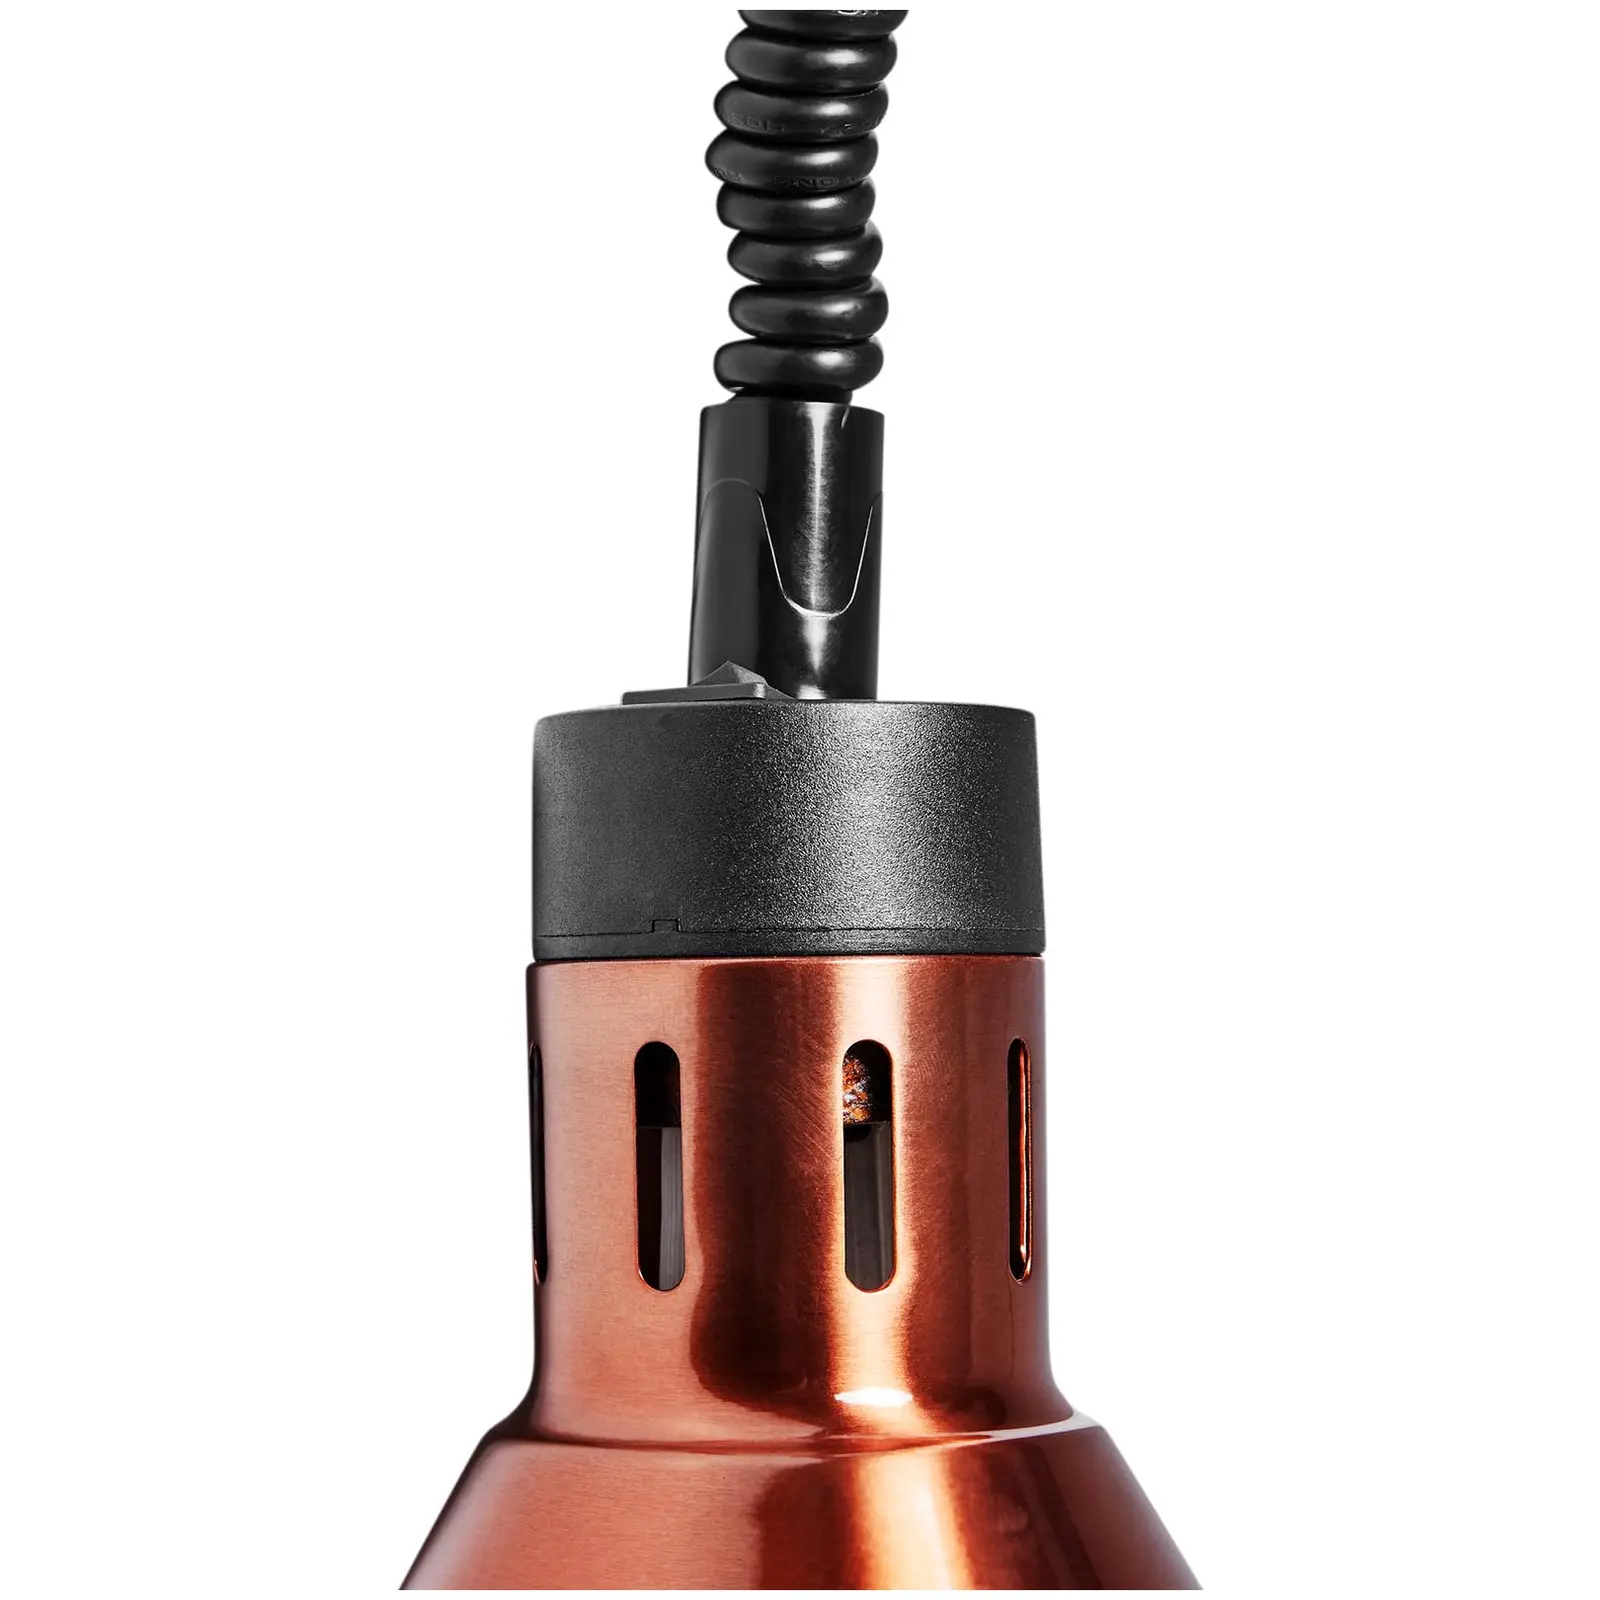 Lampada riscaldante - rame - 27 x 27 x 31 cm  - acciaio - regolabile in altezza